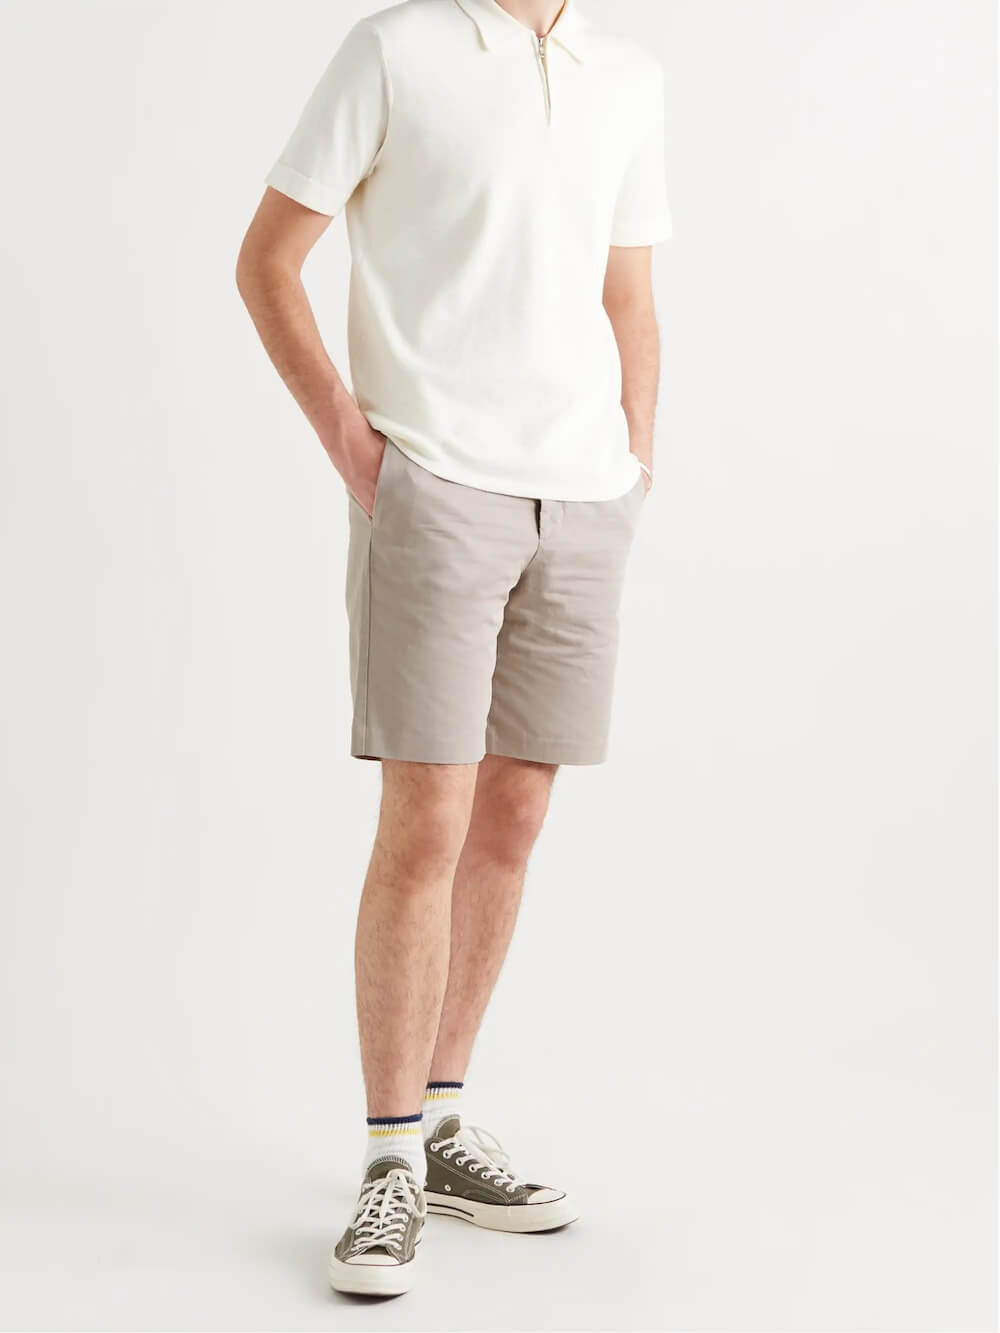 Phối quần short nam với áo polo trắng basic đơn giản mà năng động